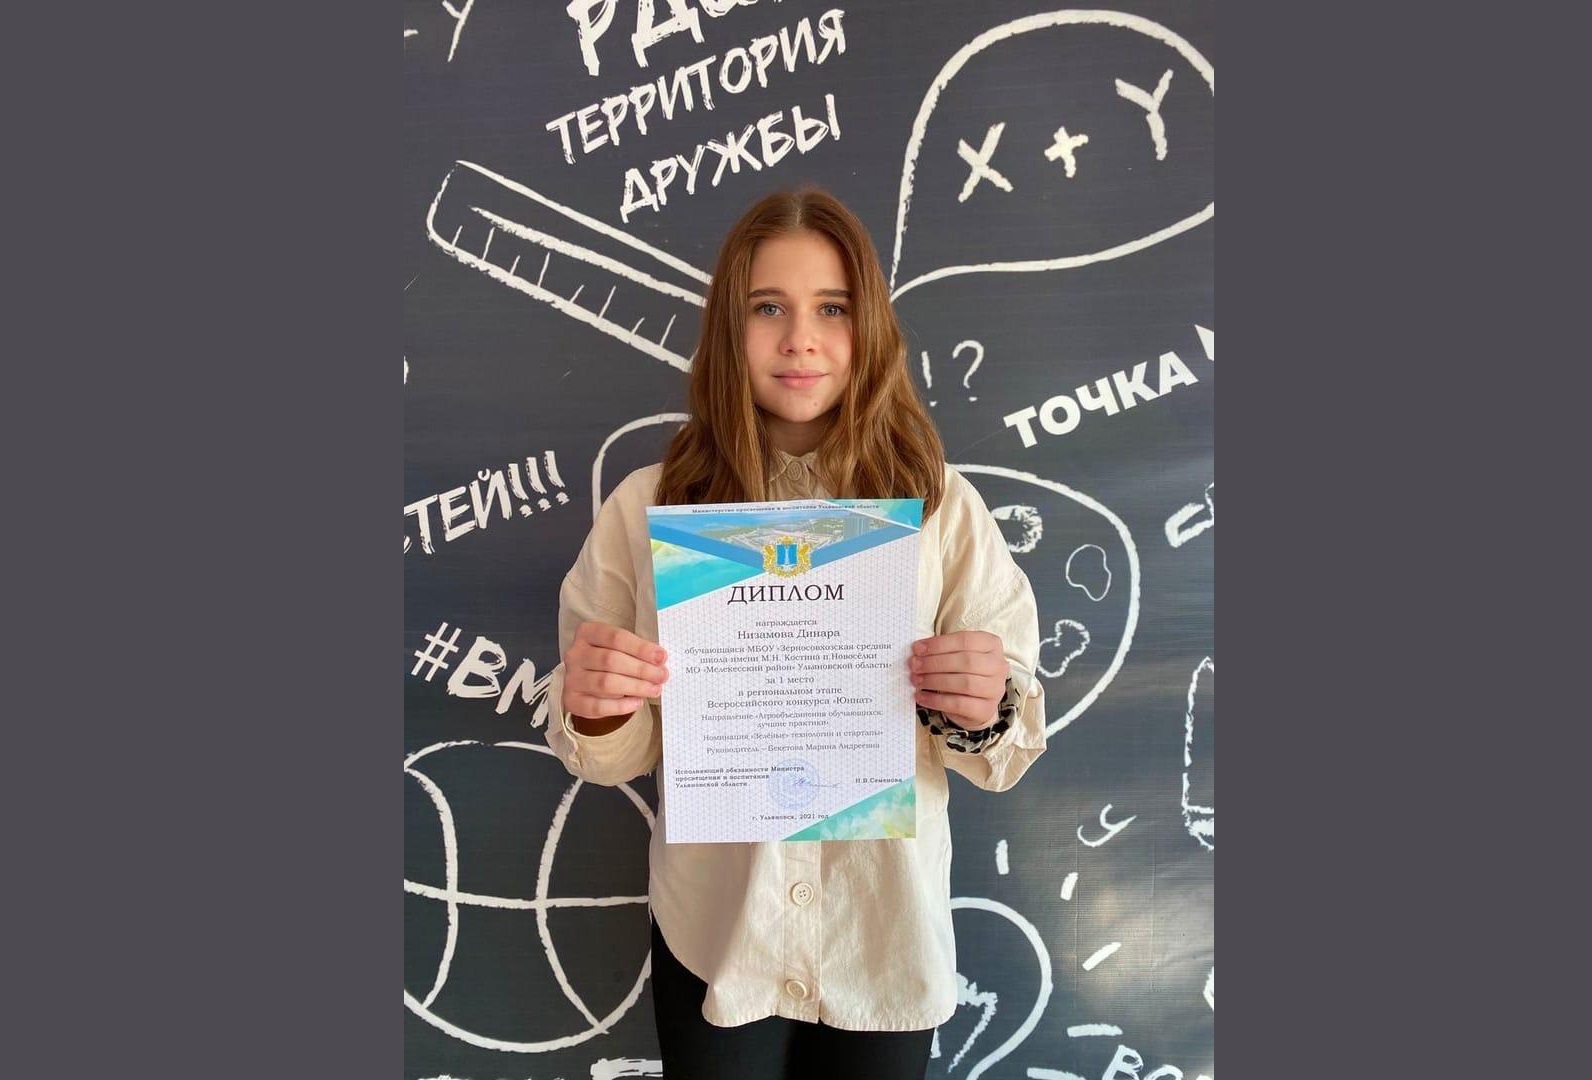 Наша ученица Зерносовхозской средней школы Низамова Динара прошла отбор среди обучающихся Ульяновской области